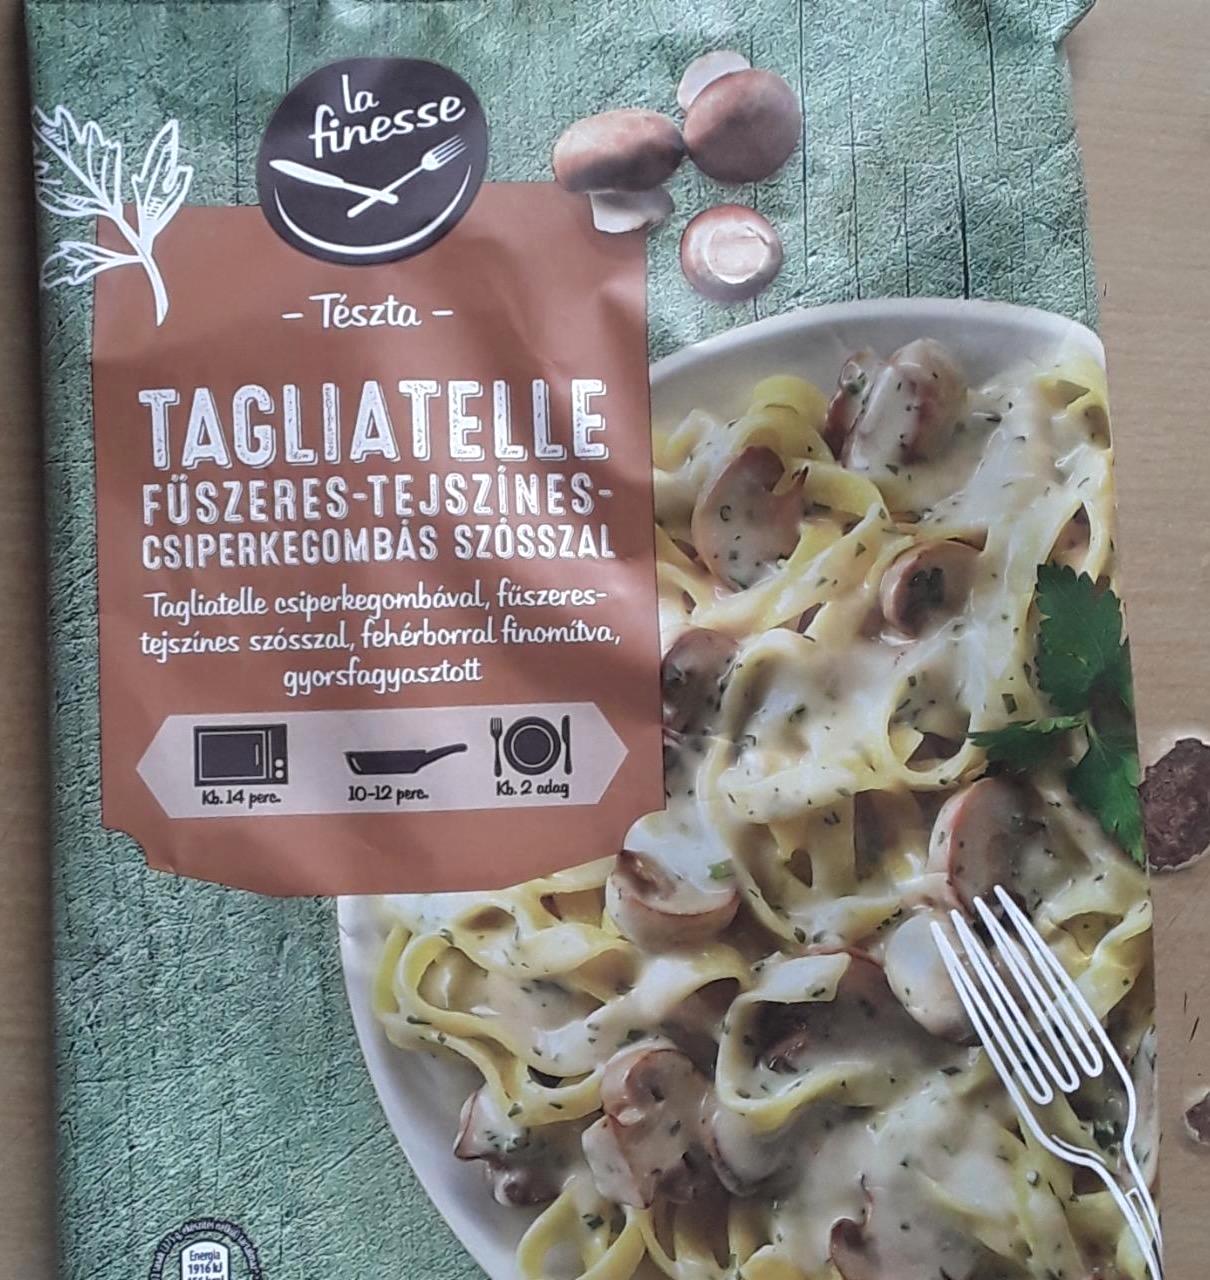 Képek - Pasta Tagliatelle fűszeres tejszínes gombás La finesse